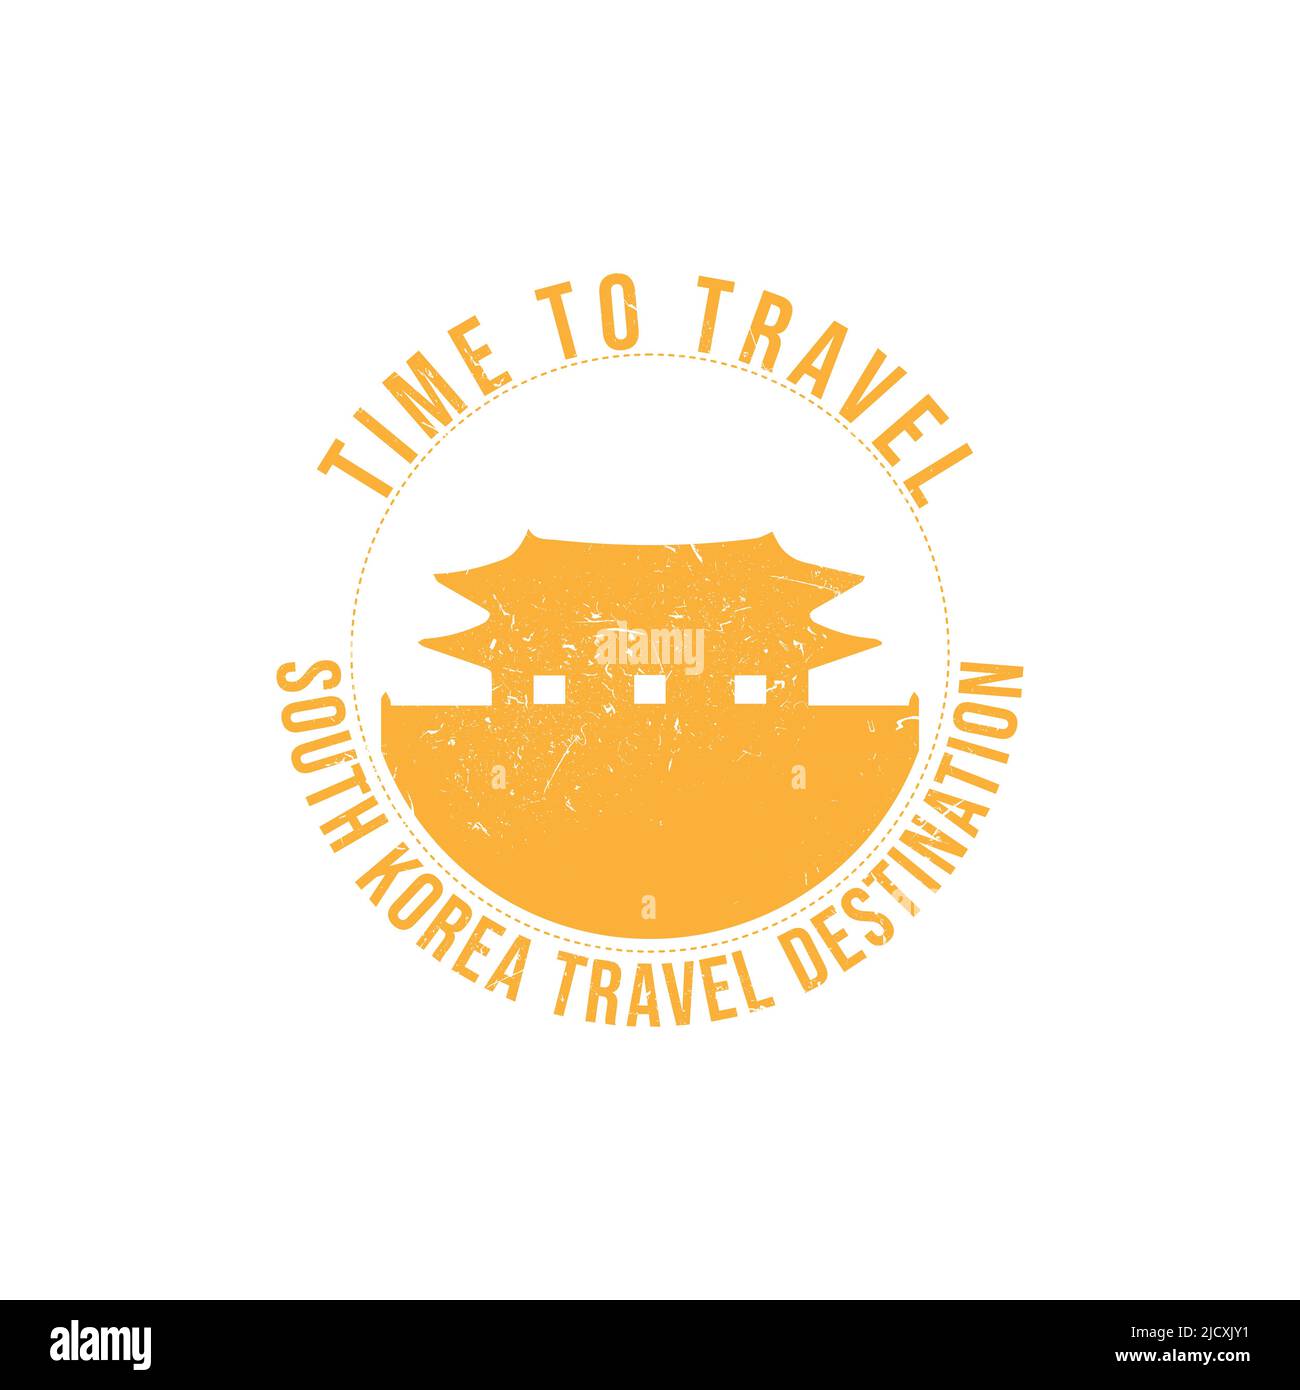 Grunge Gummistempel mit dem Text Südkorea travel Destination in der Marke geschrieben. Zeit zum Reisen. Silhouette von Südkorea historischen Ort Stock Vektor